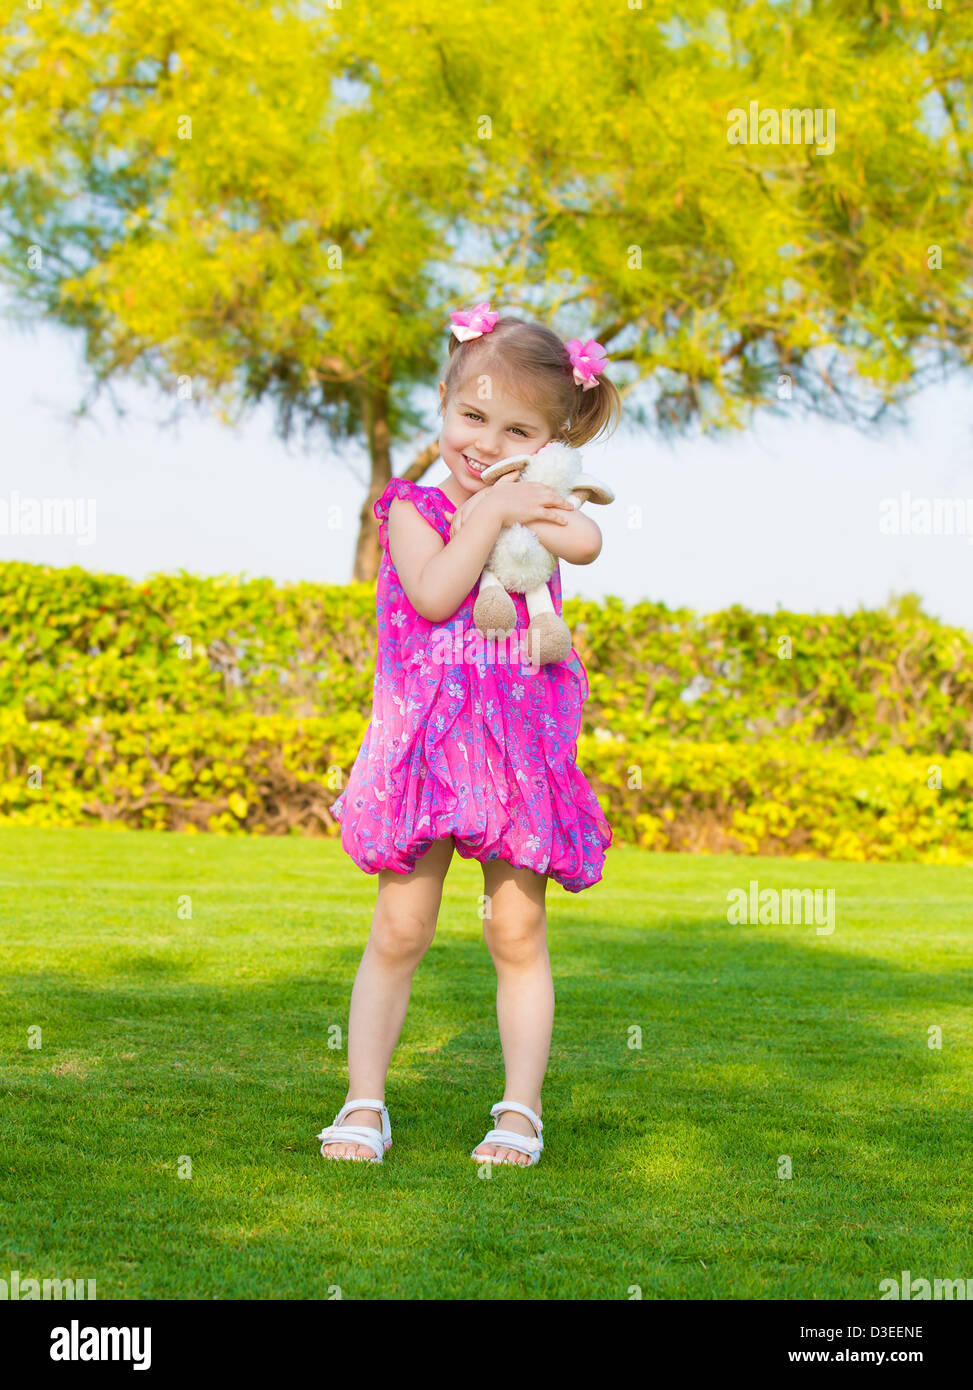 Foto der niedliche kleine Mädchen hält in Händen Stofftier, süßes Baby draußen spielen, entzückende kleine Weibchen haben Spaß im Hinterhof Stockfoto